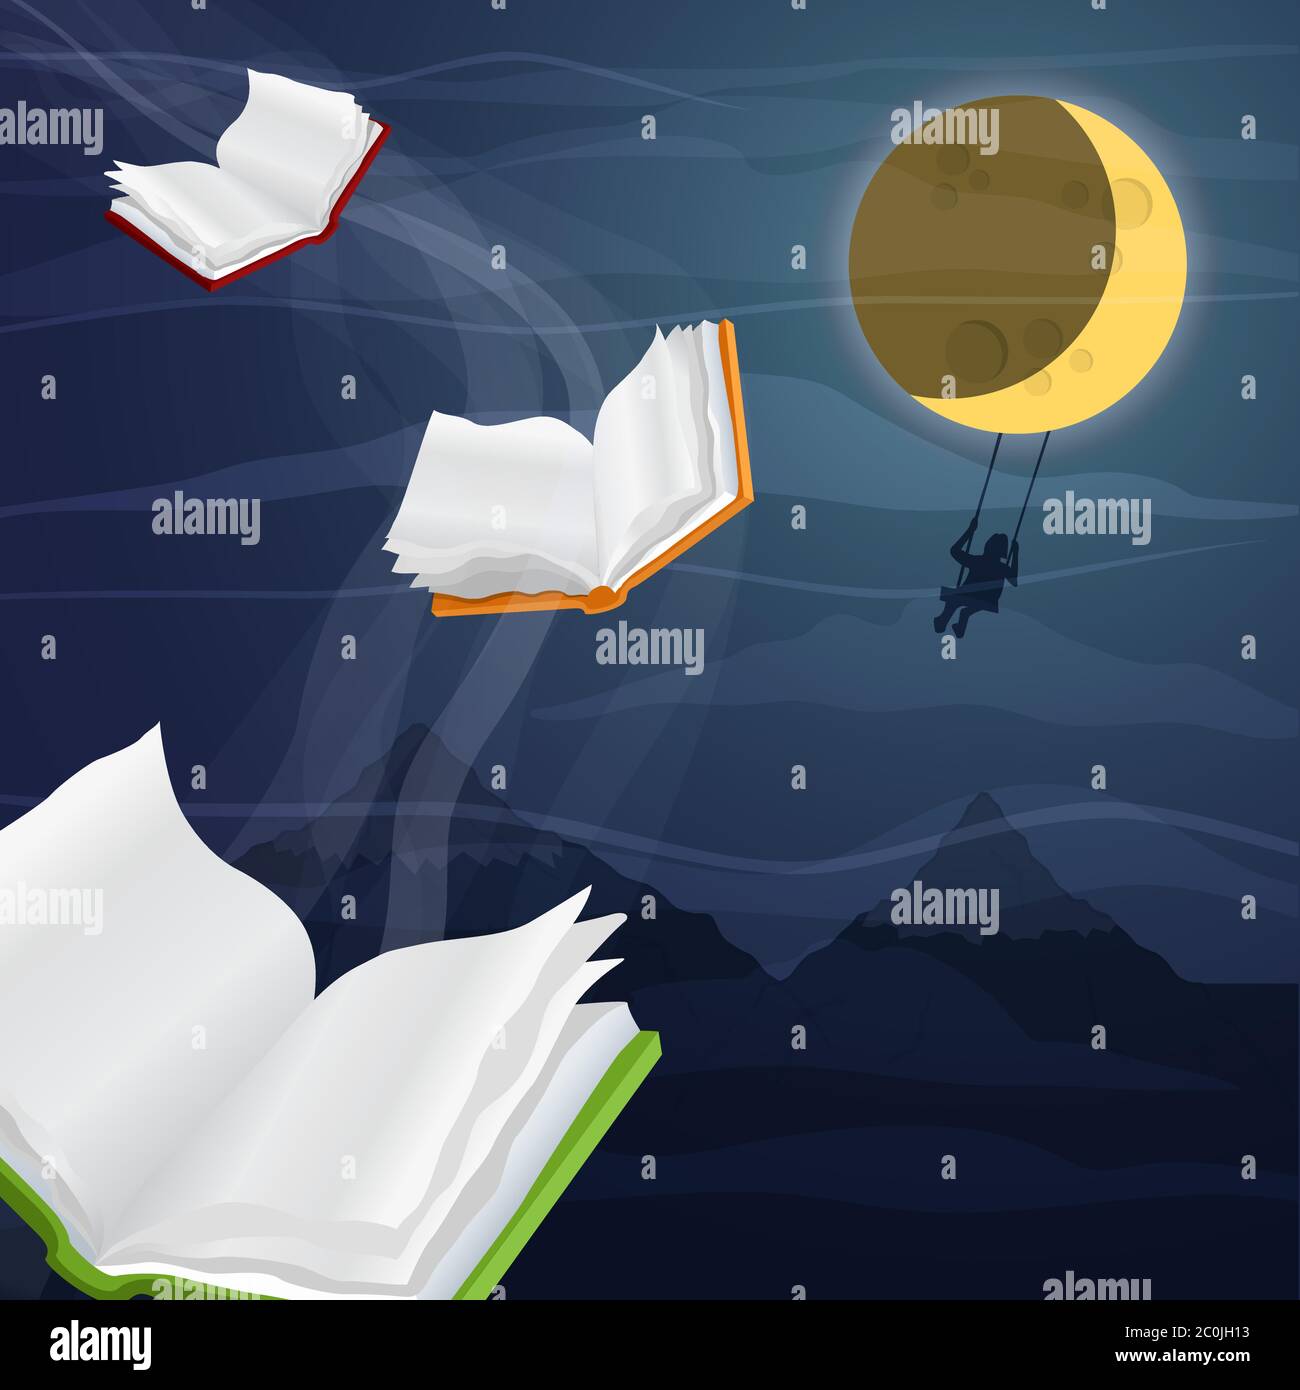 Ouvrez des livres volent dans le ciel nocturne avec une femme balançant sous la lune. Lire l'imagination ou l'éducation concept de connaissance. Illustration de Vecteur